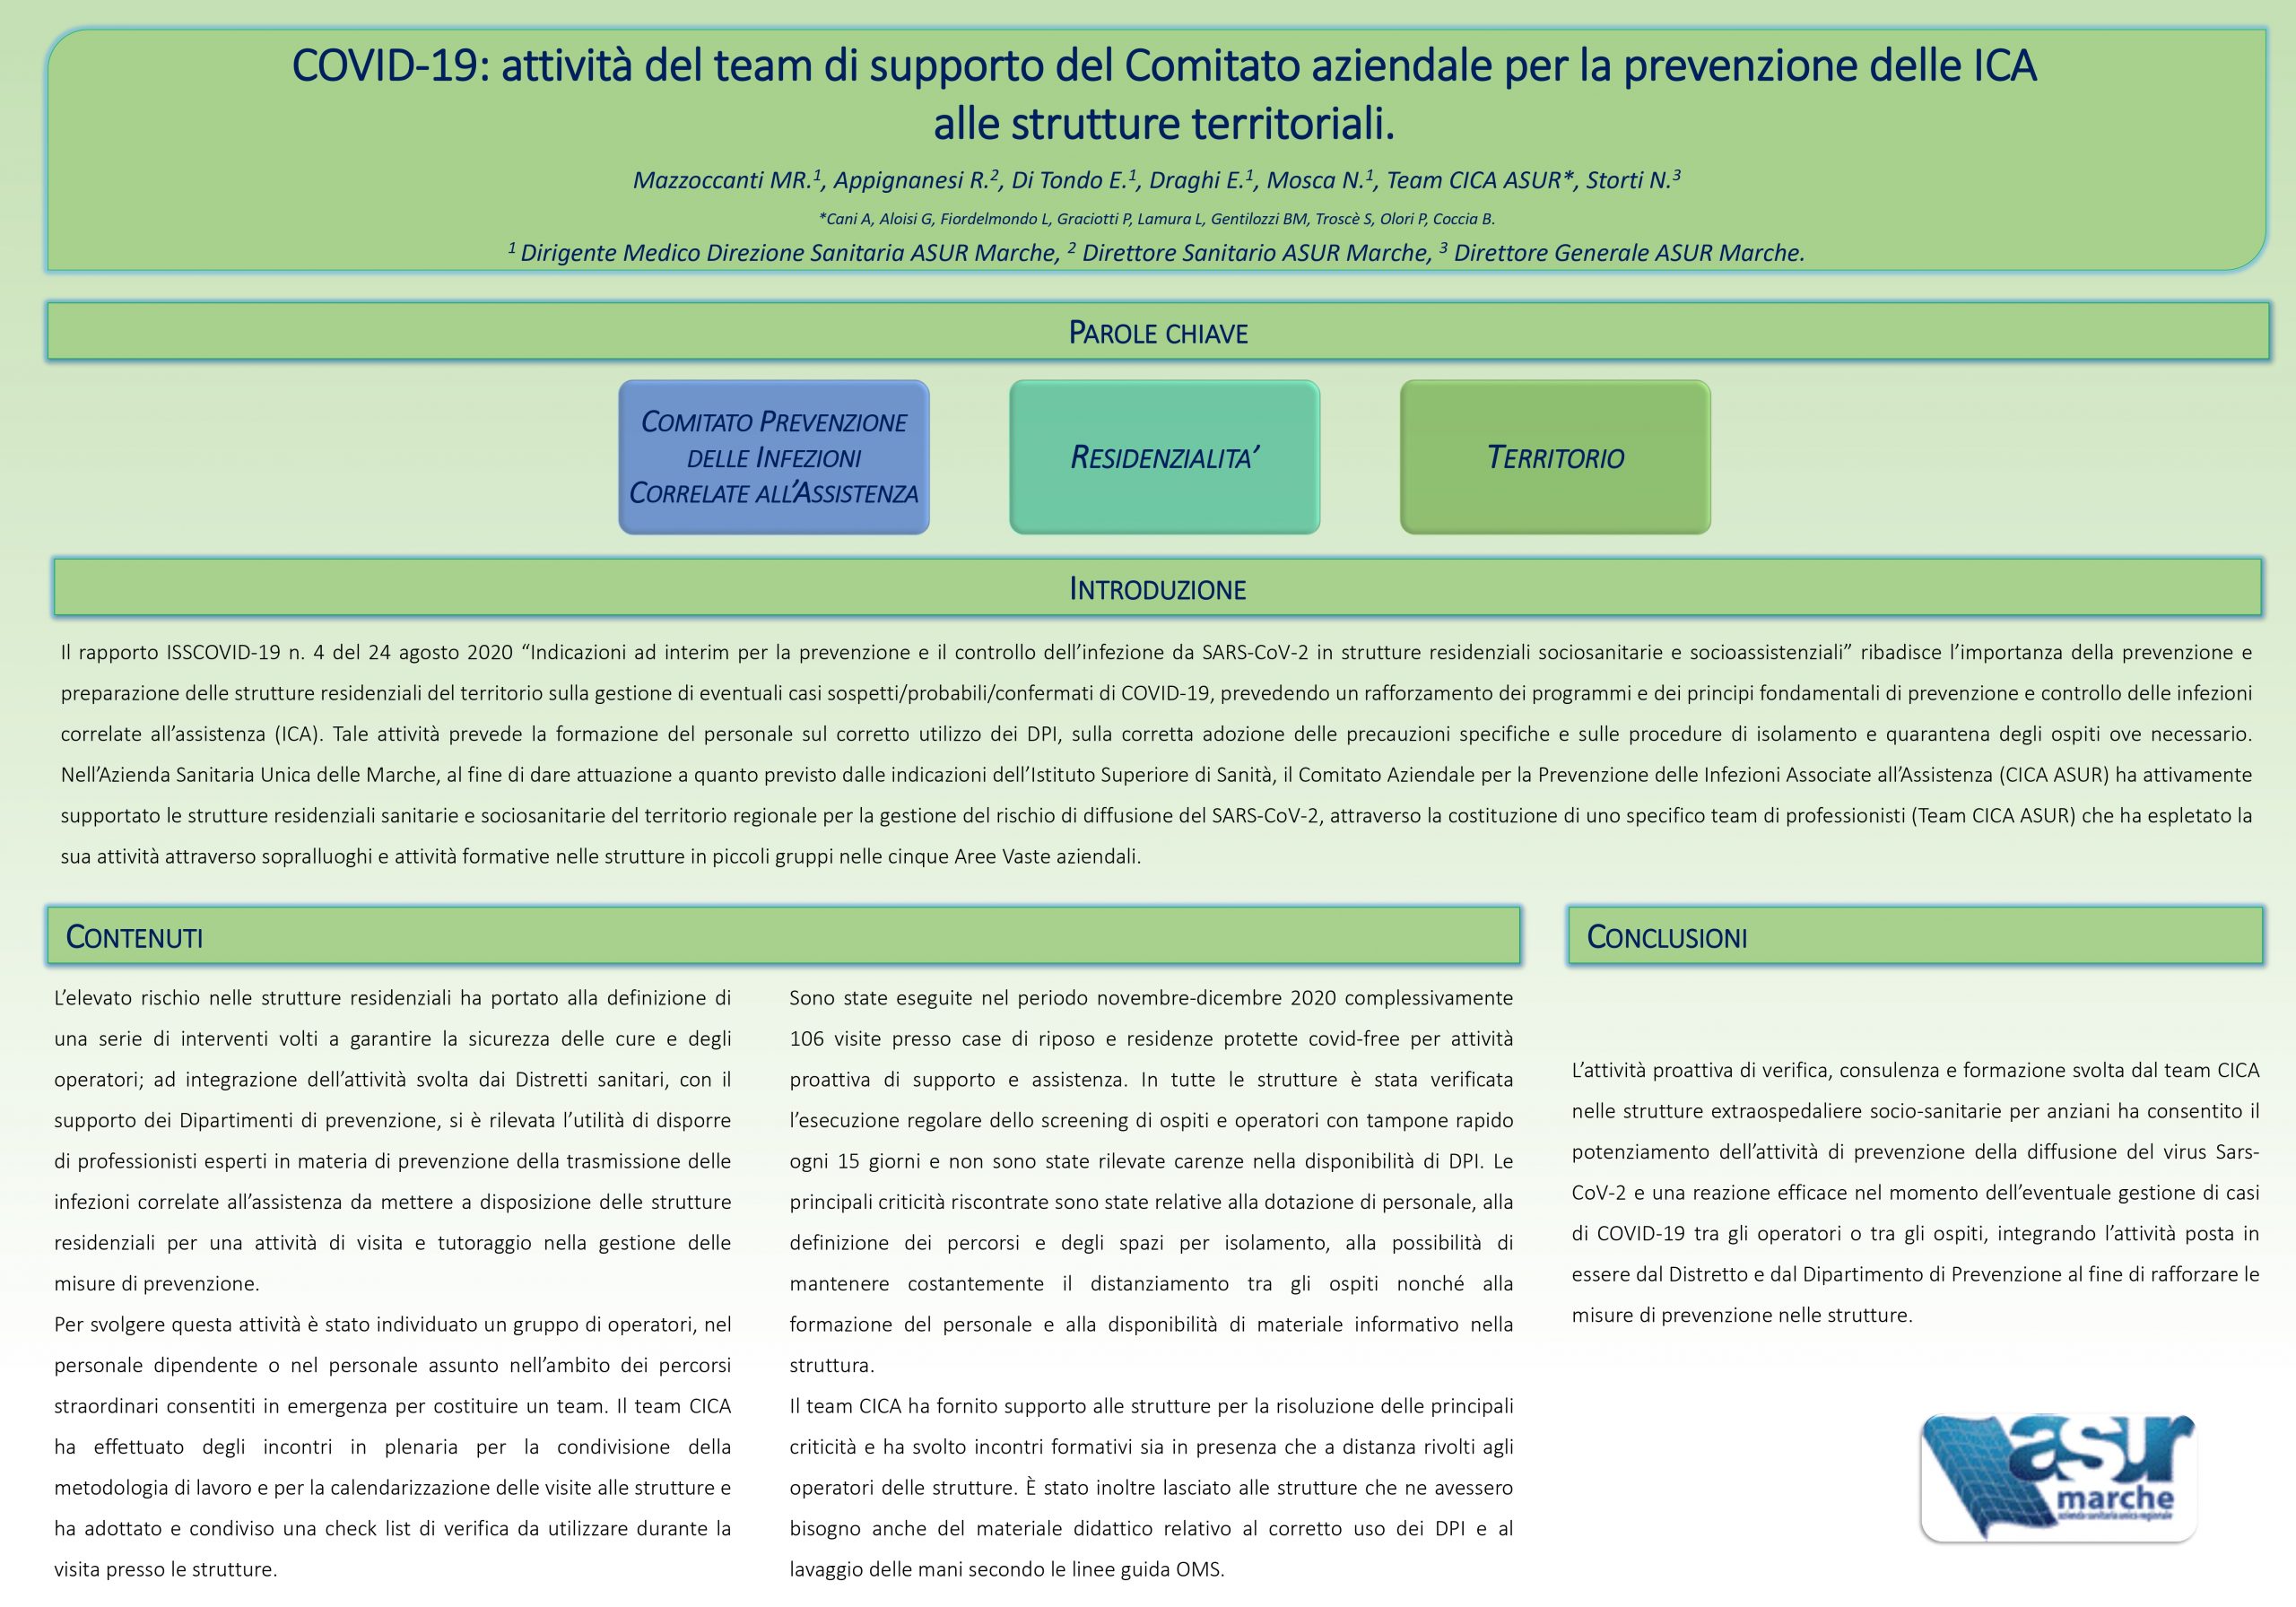 Mazzoccanti – COVID-19: attività del team di supporto del Comitato aziendale per la prevenzione delle ICA  alle strutture territoriali